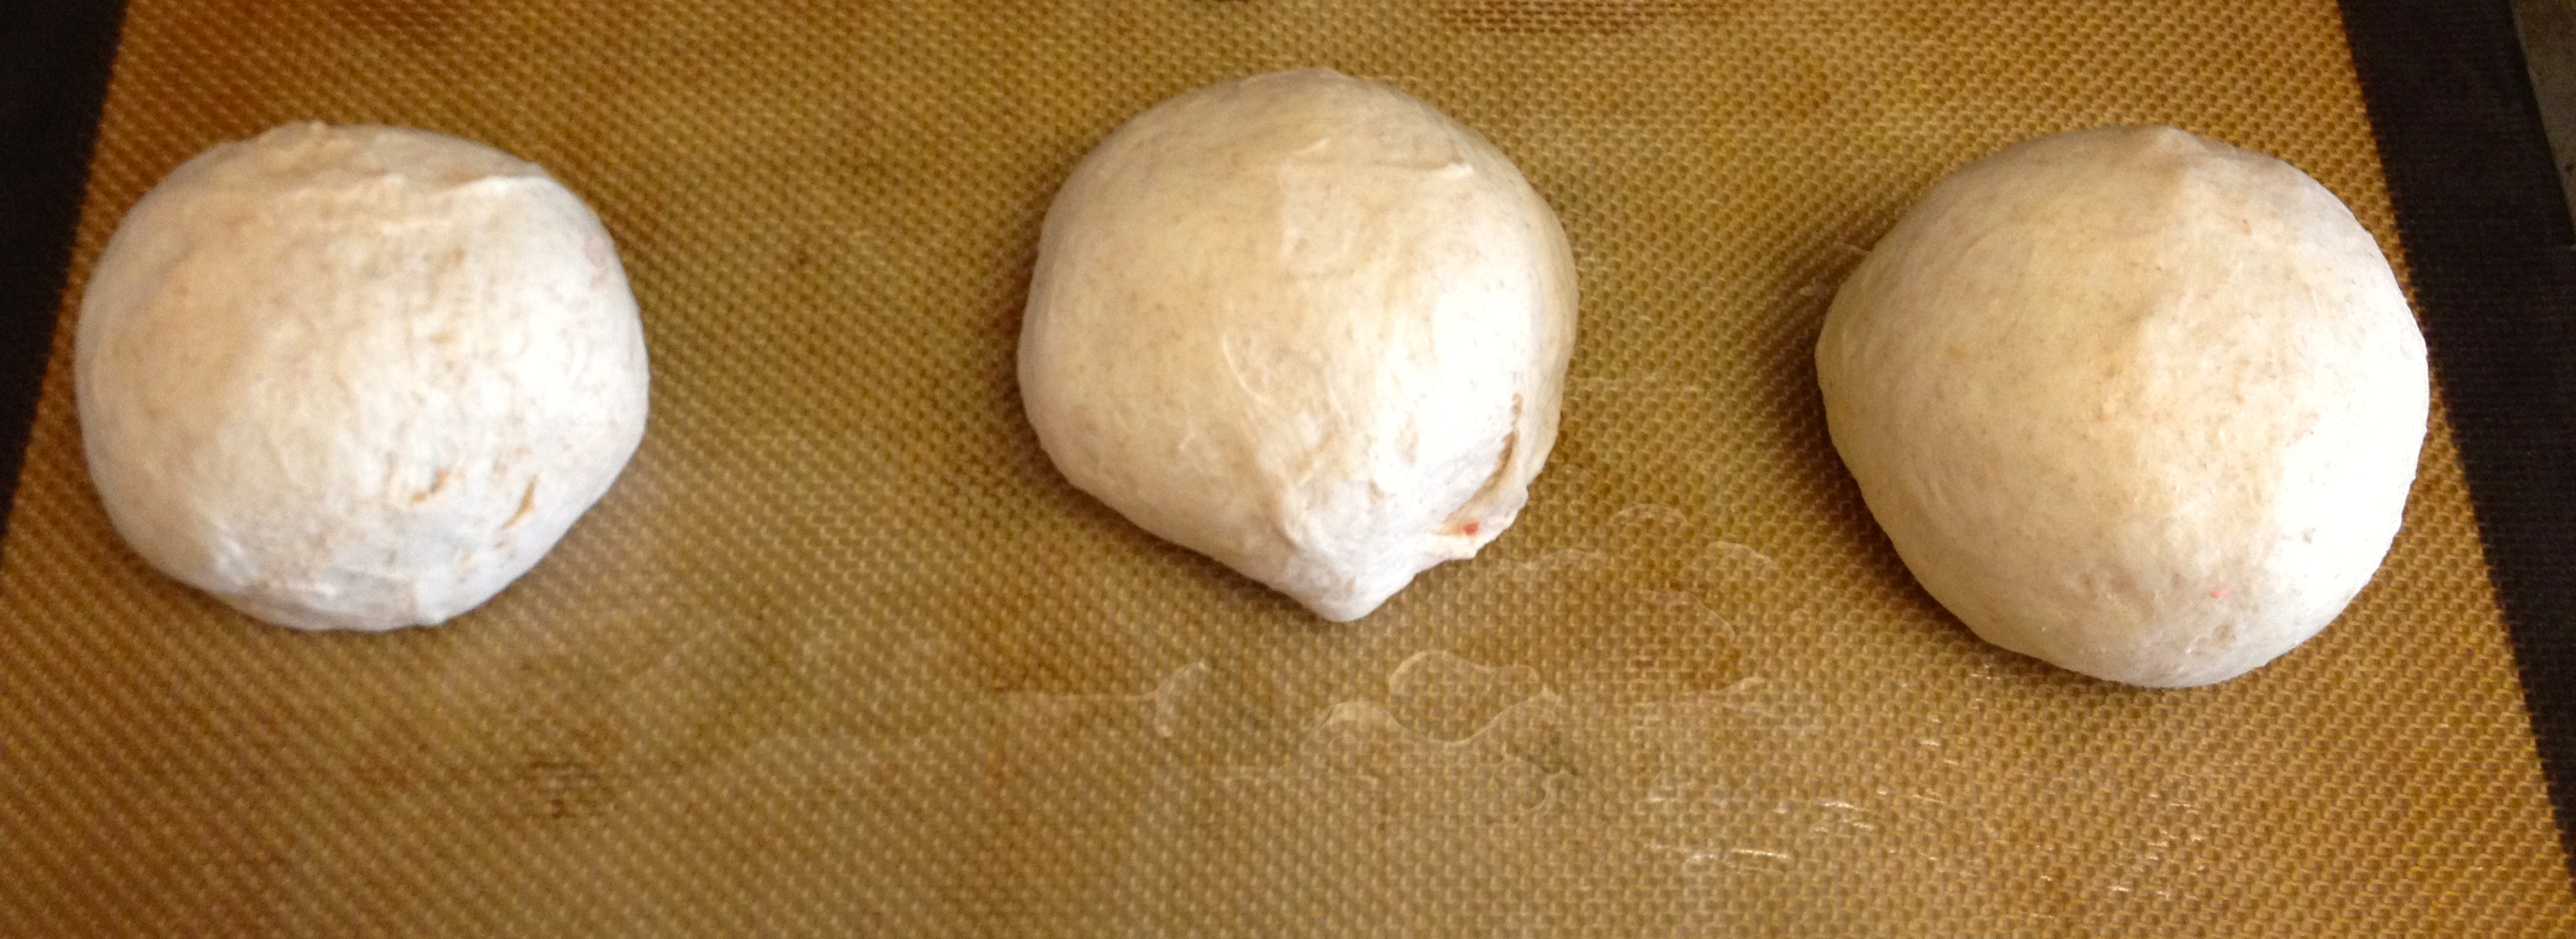 homemade bagels dough balls